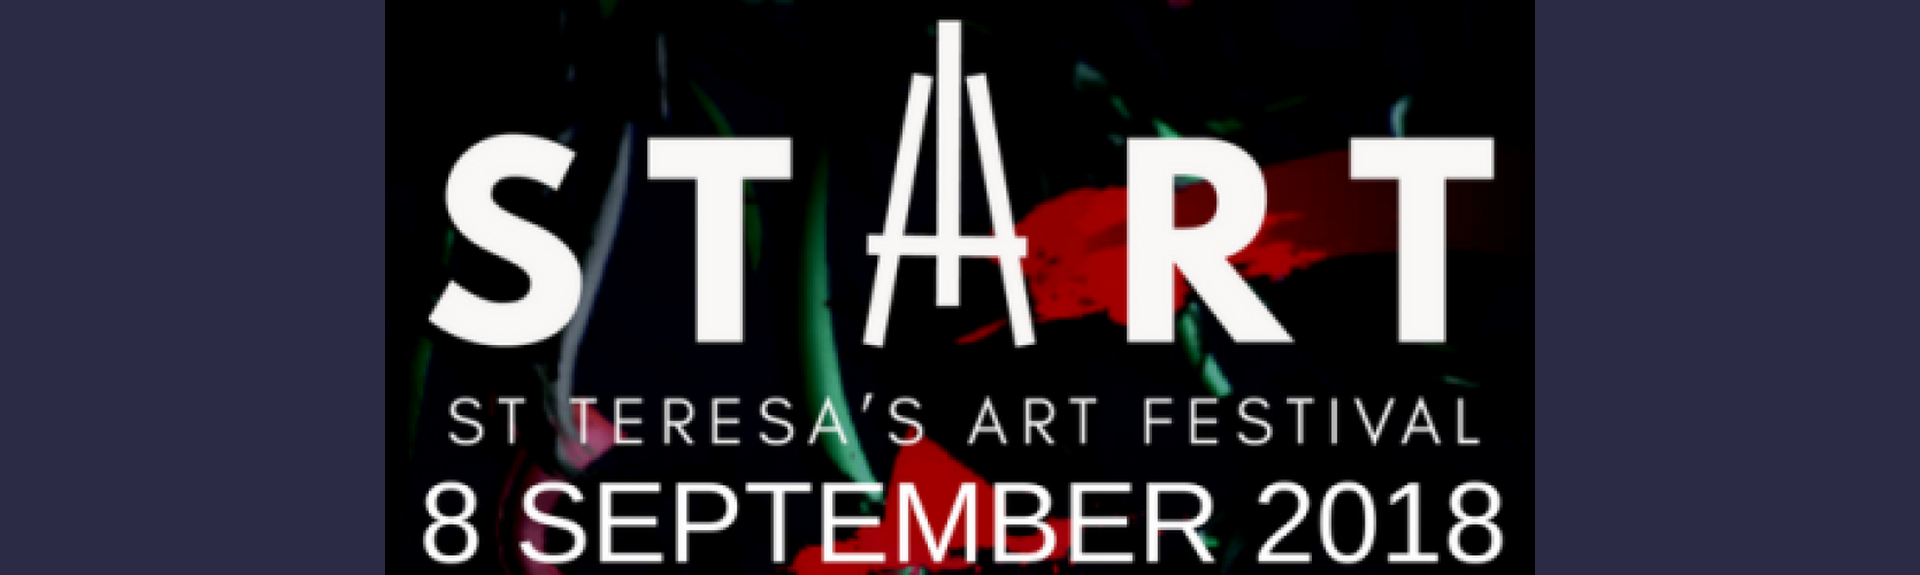 St Teresa’s Art Festival - START